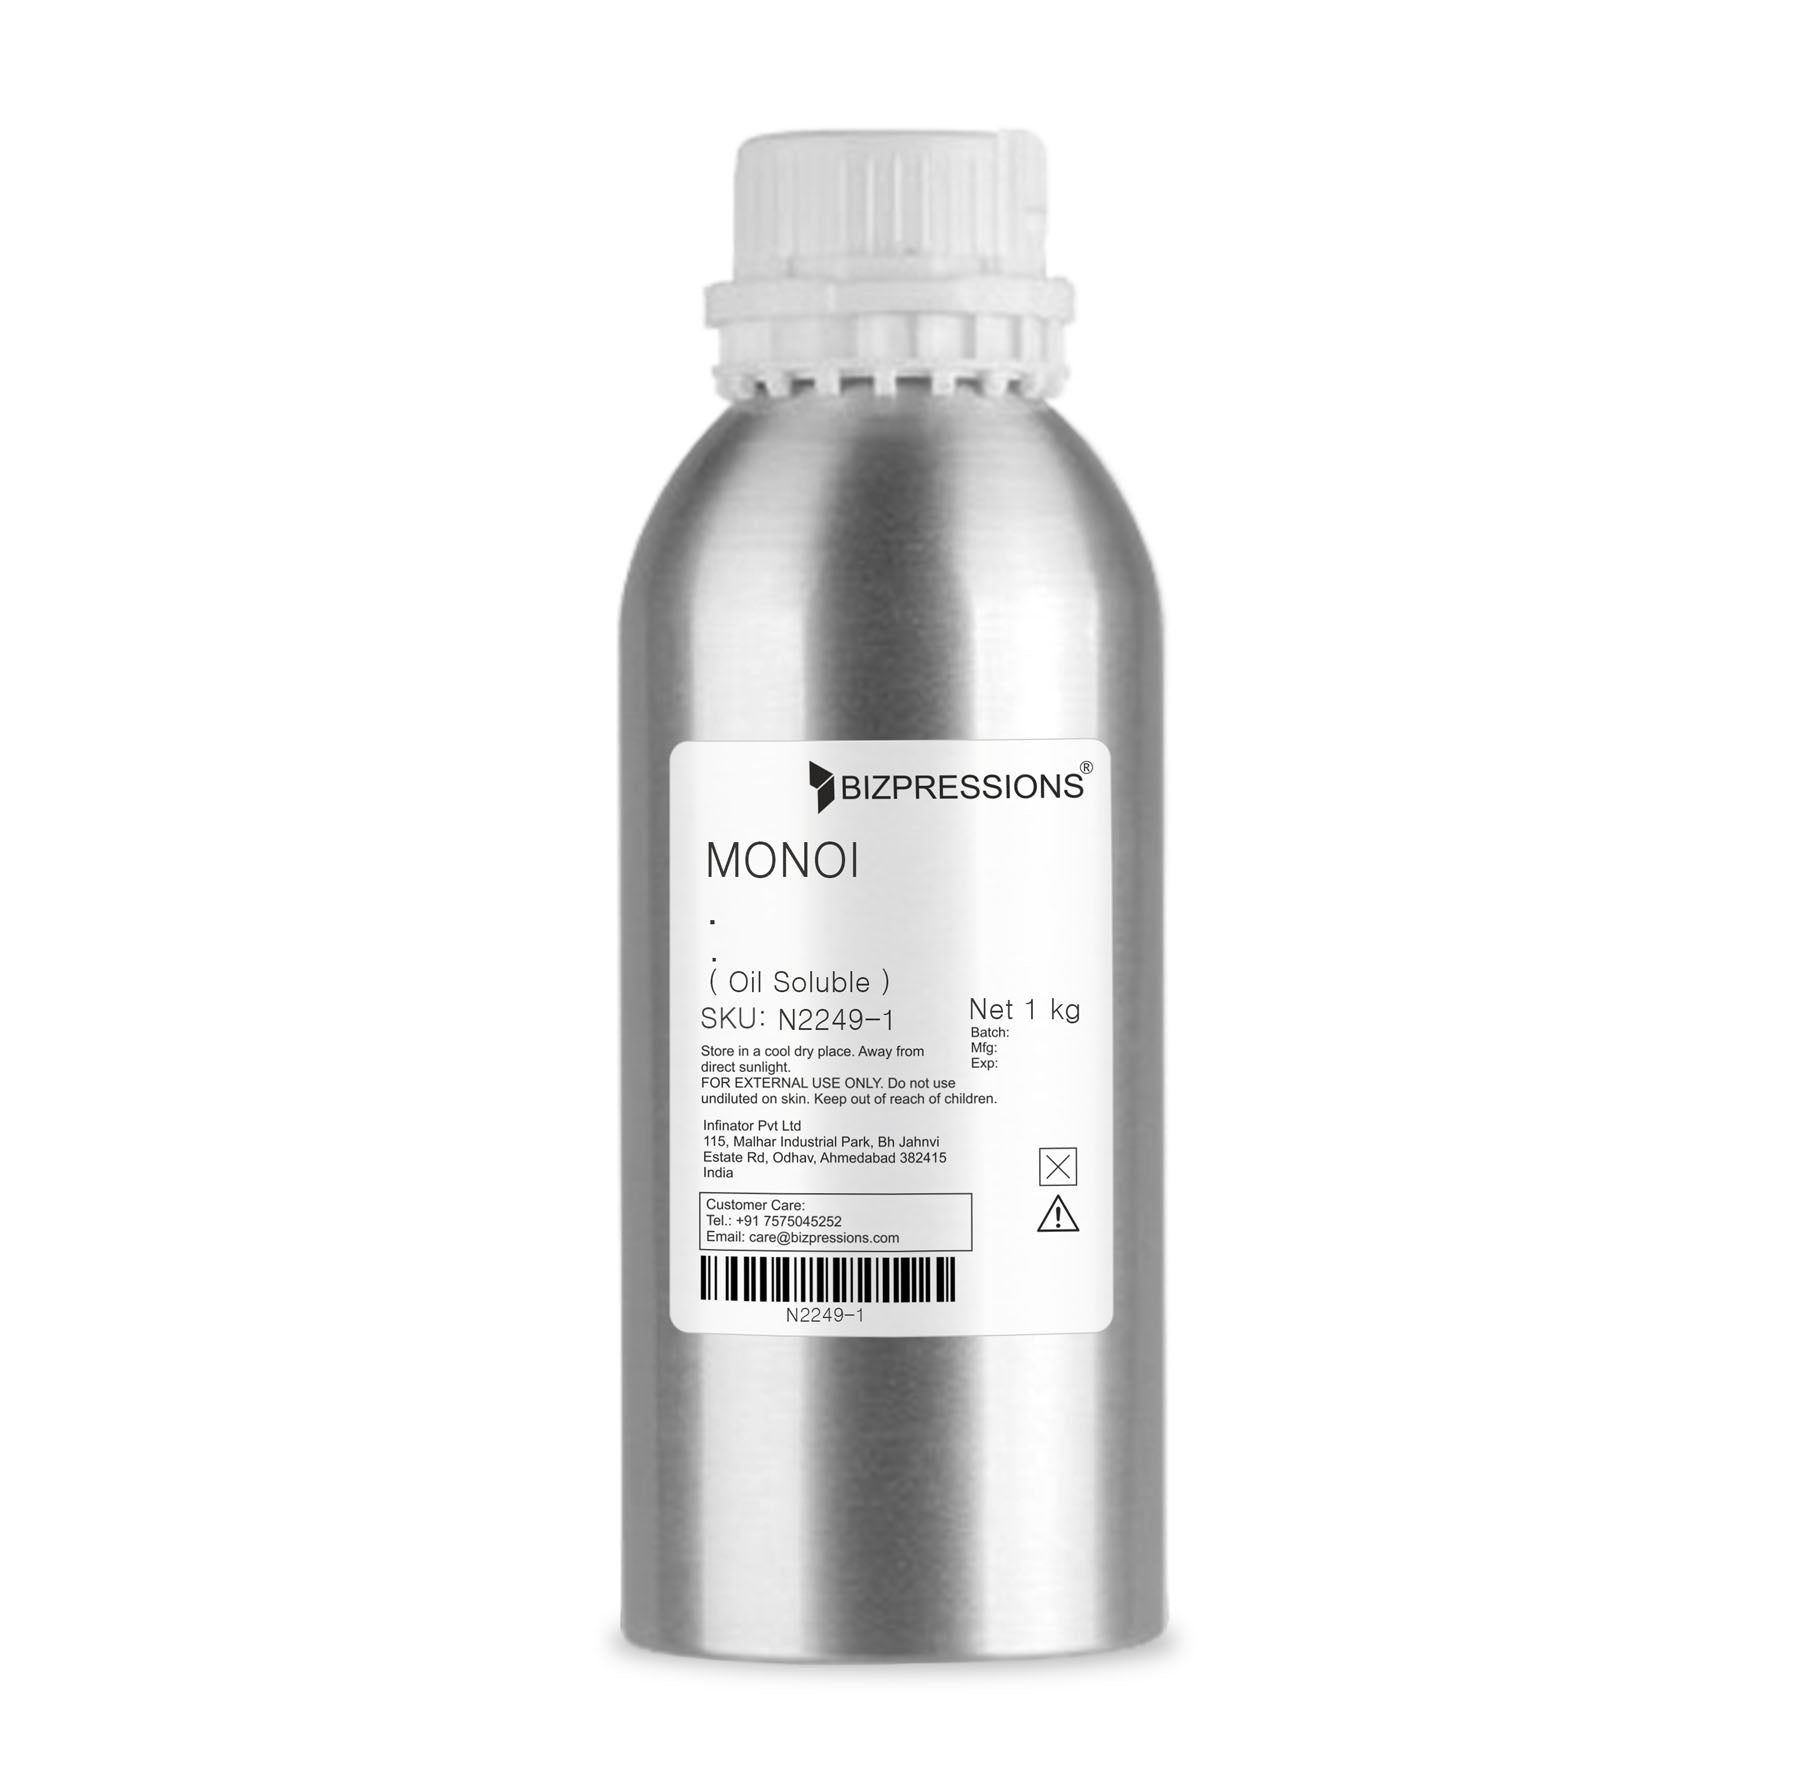 MONOI - Fragrance ( Oil Soluble ) - 1 kg